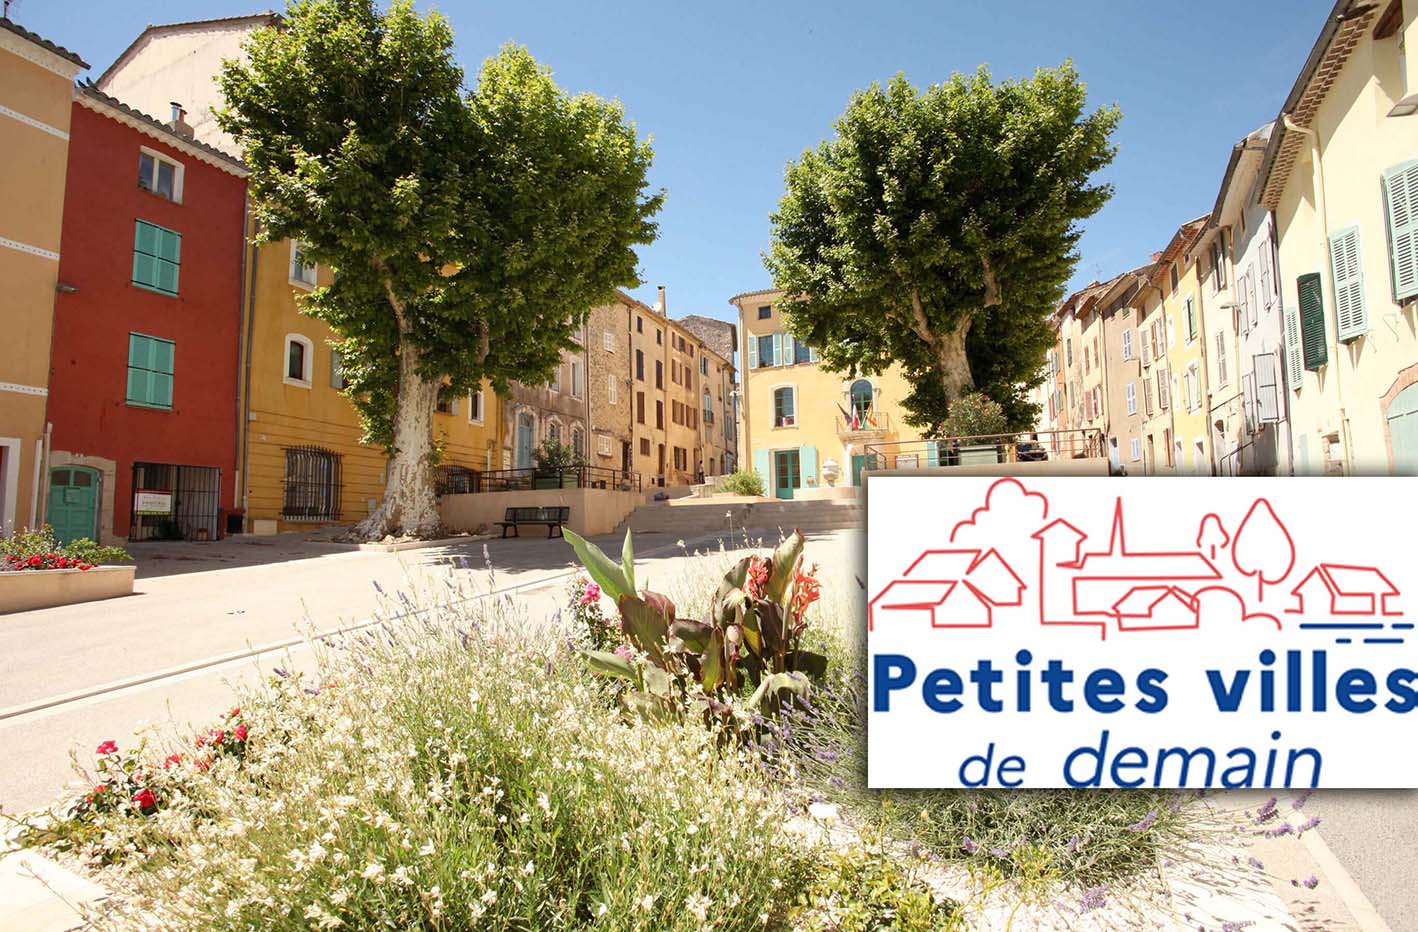 Petites villes de demain: Caussade, ville lauréate en Tarn-et-Garonne 